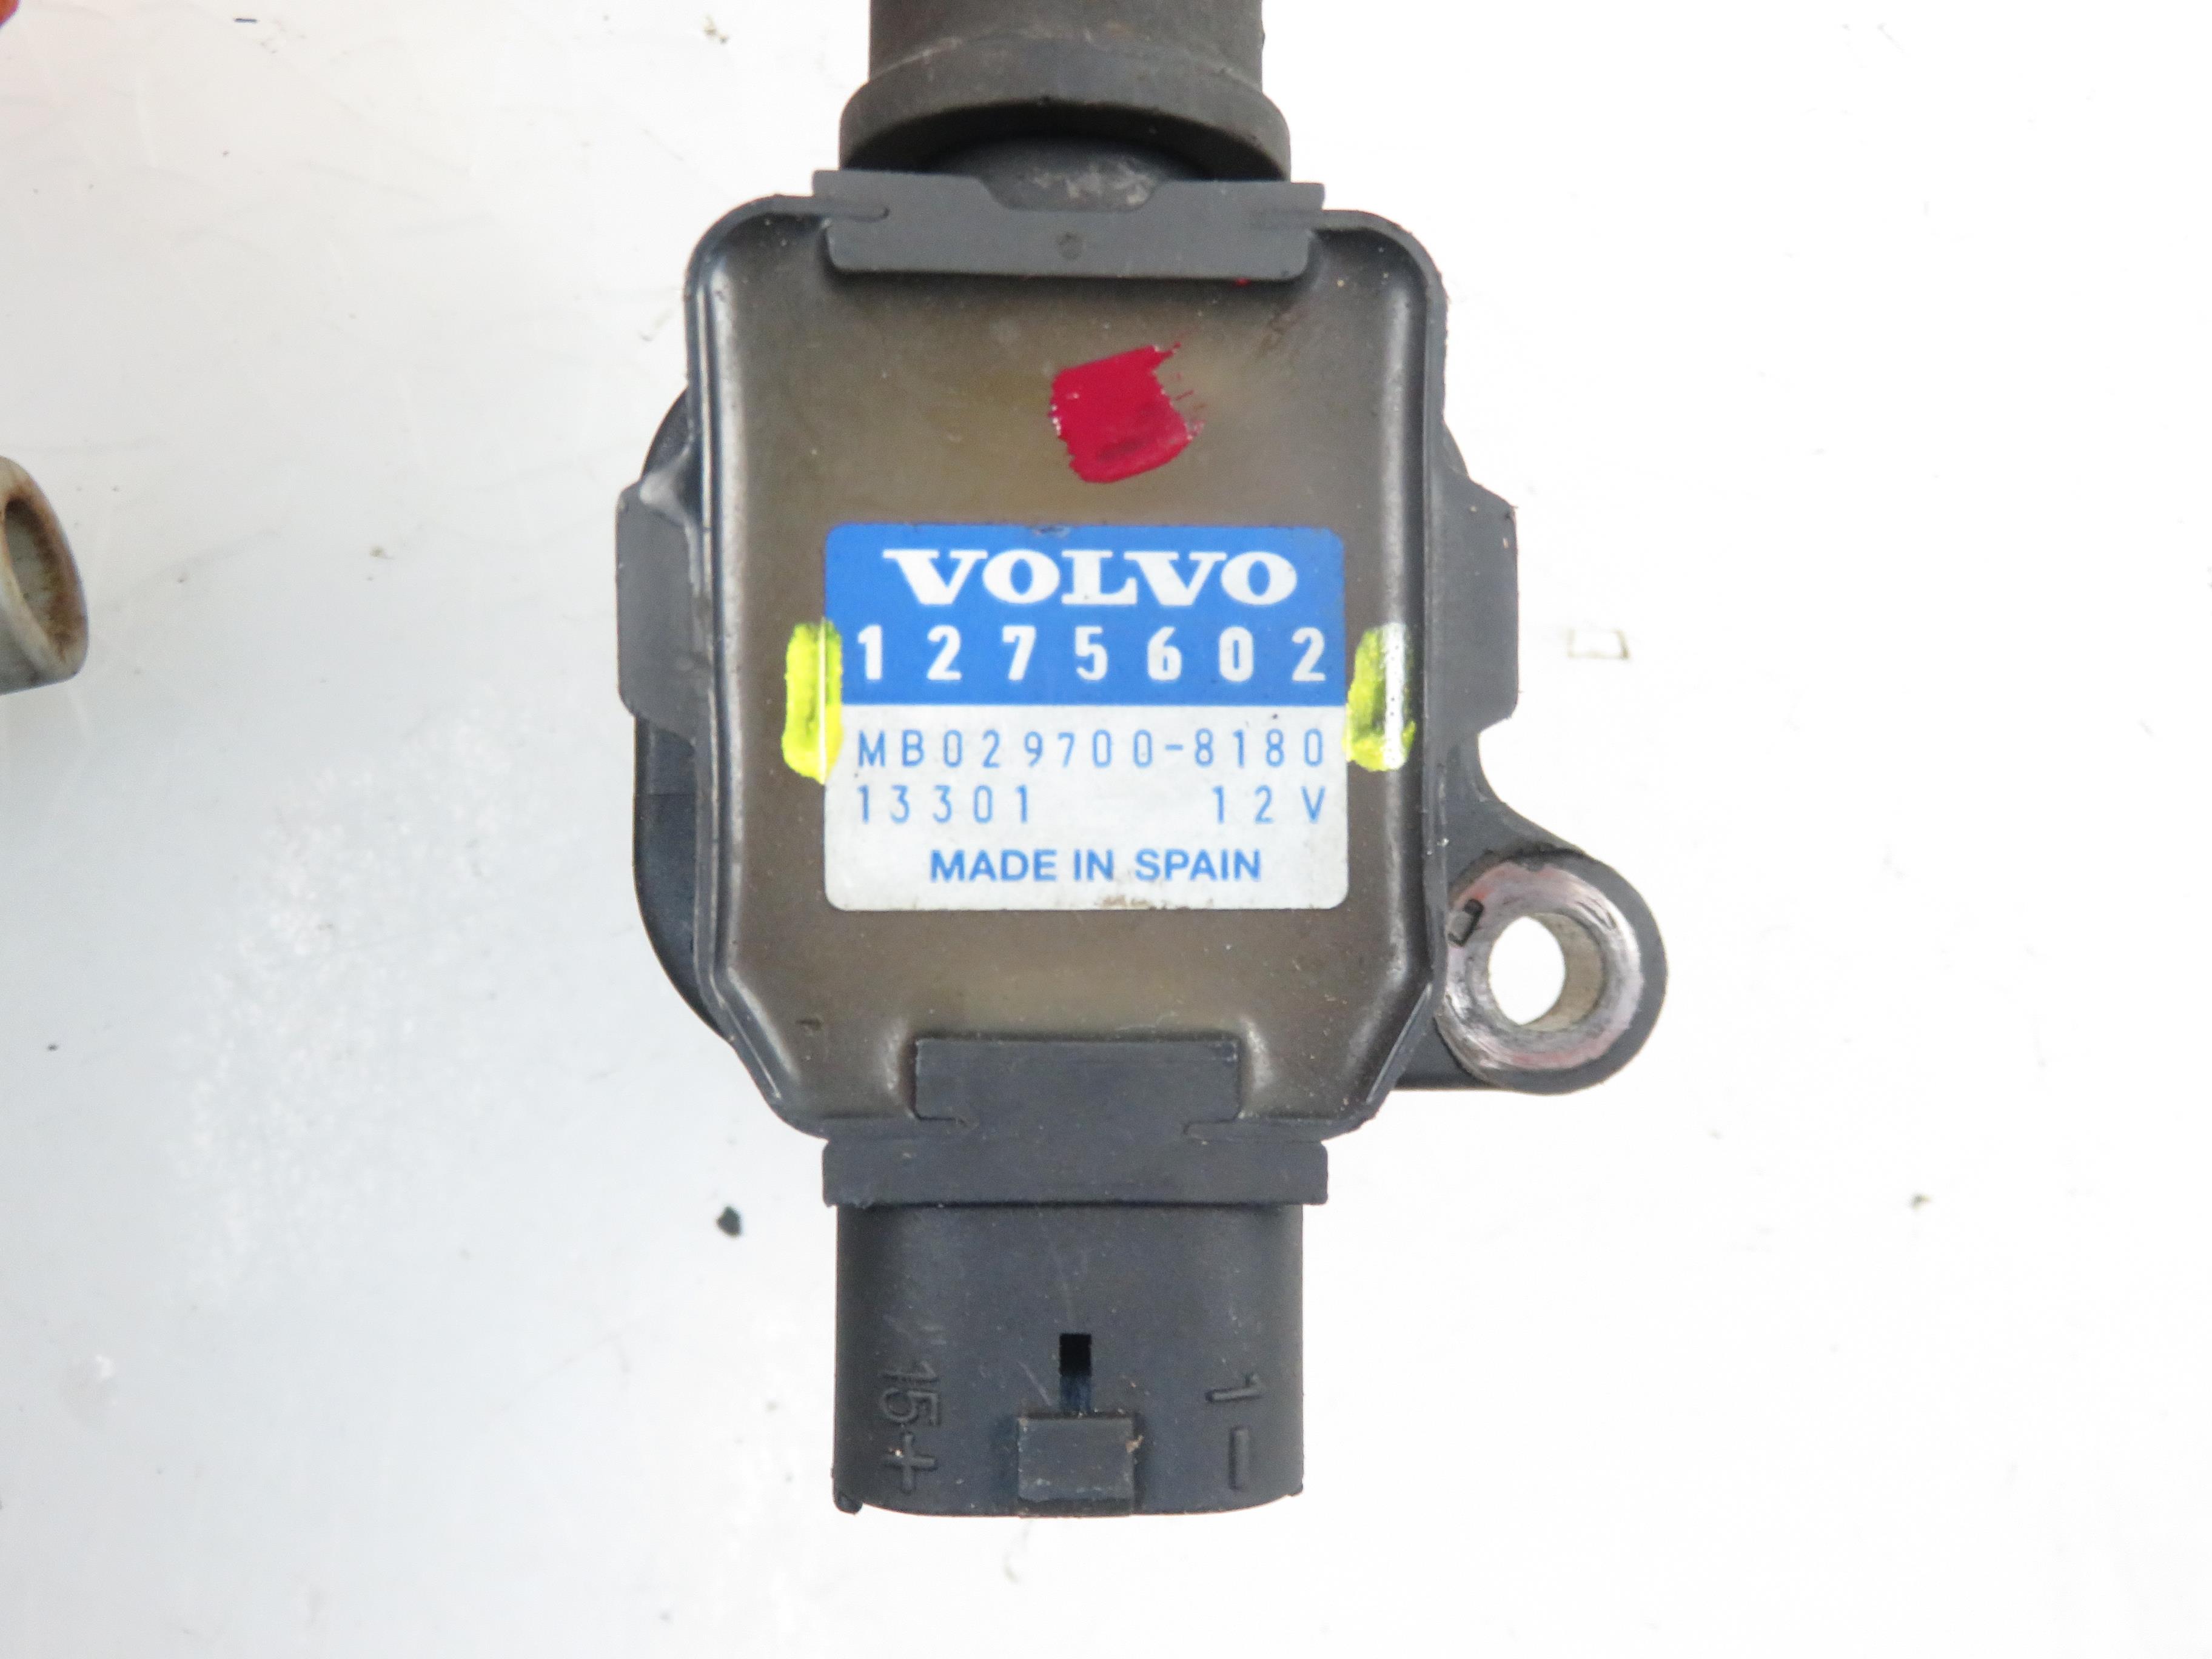 VOLVO V40 1 generation (1996-2004) Uždegimo ritė (babina) 1275602, MB0297008180 21232420